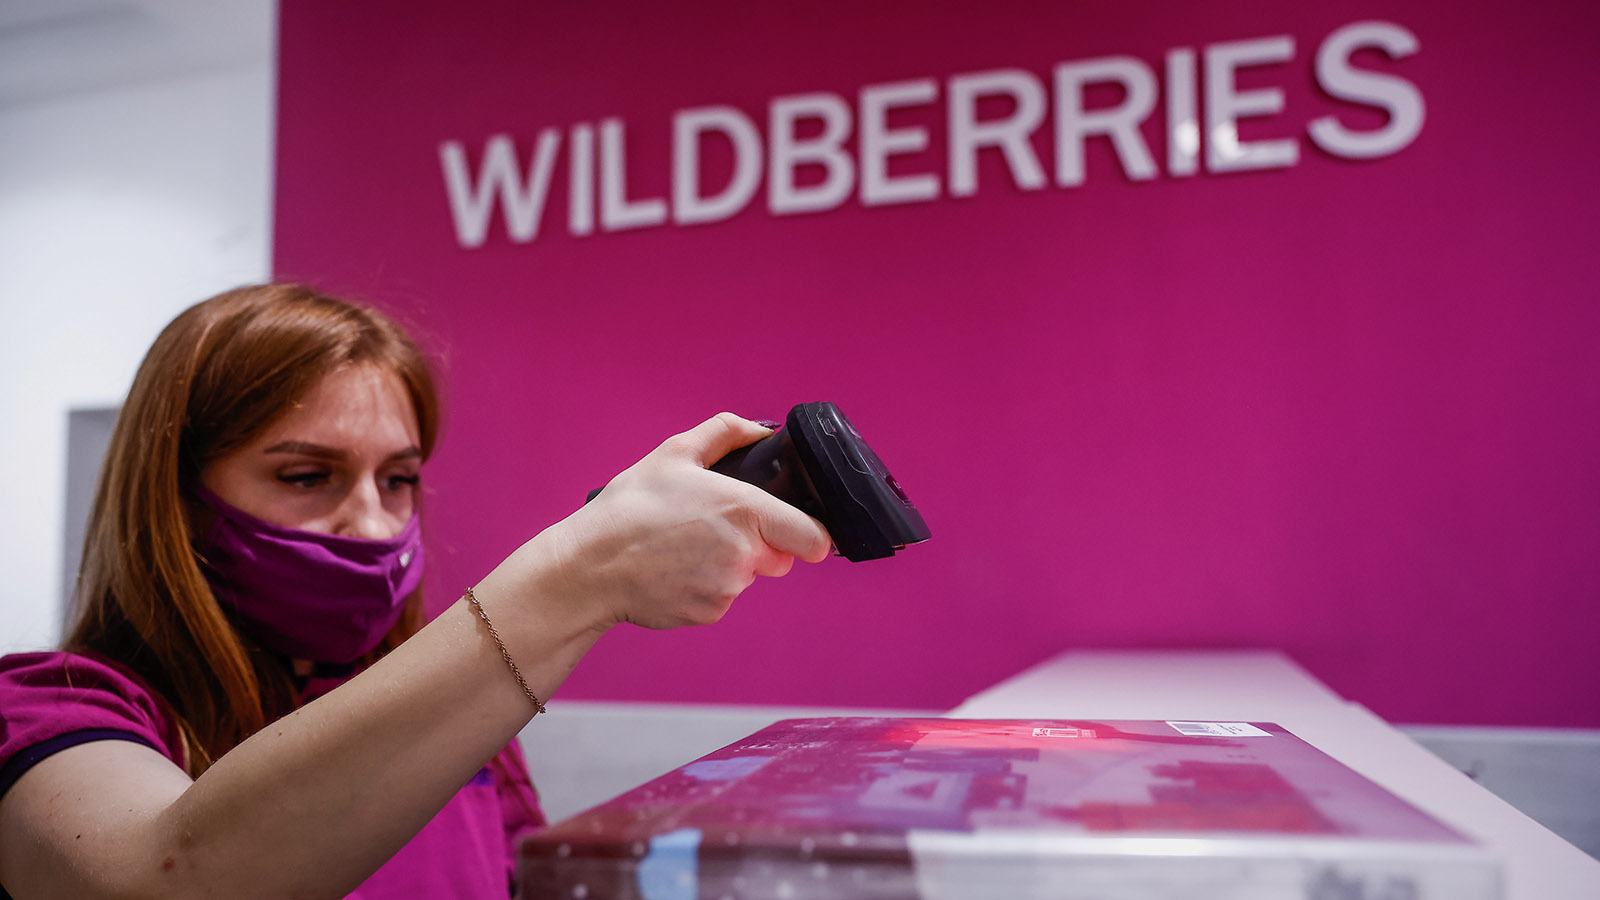 Без ритуальных и эротических товаров: как Wildberries ограничивает  продавцов | Forbes.ru